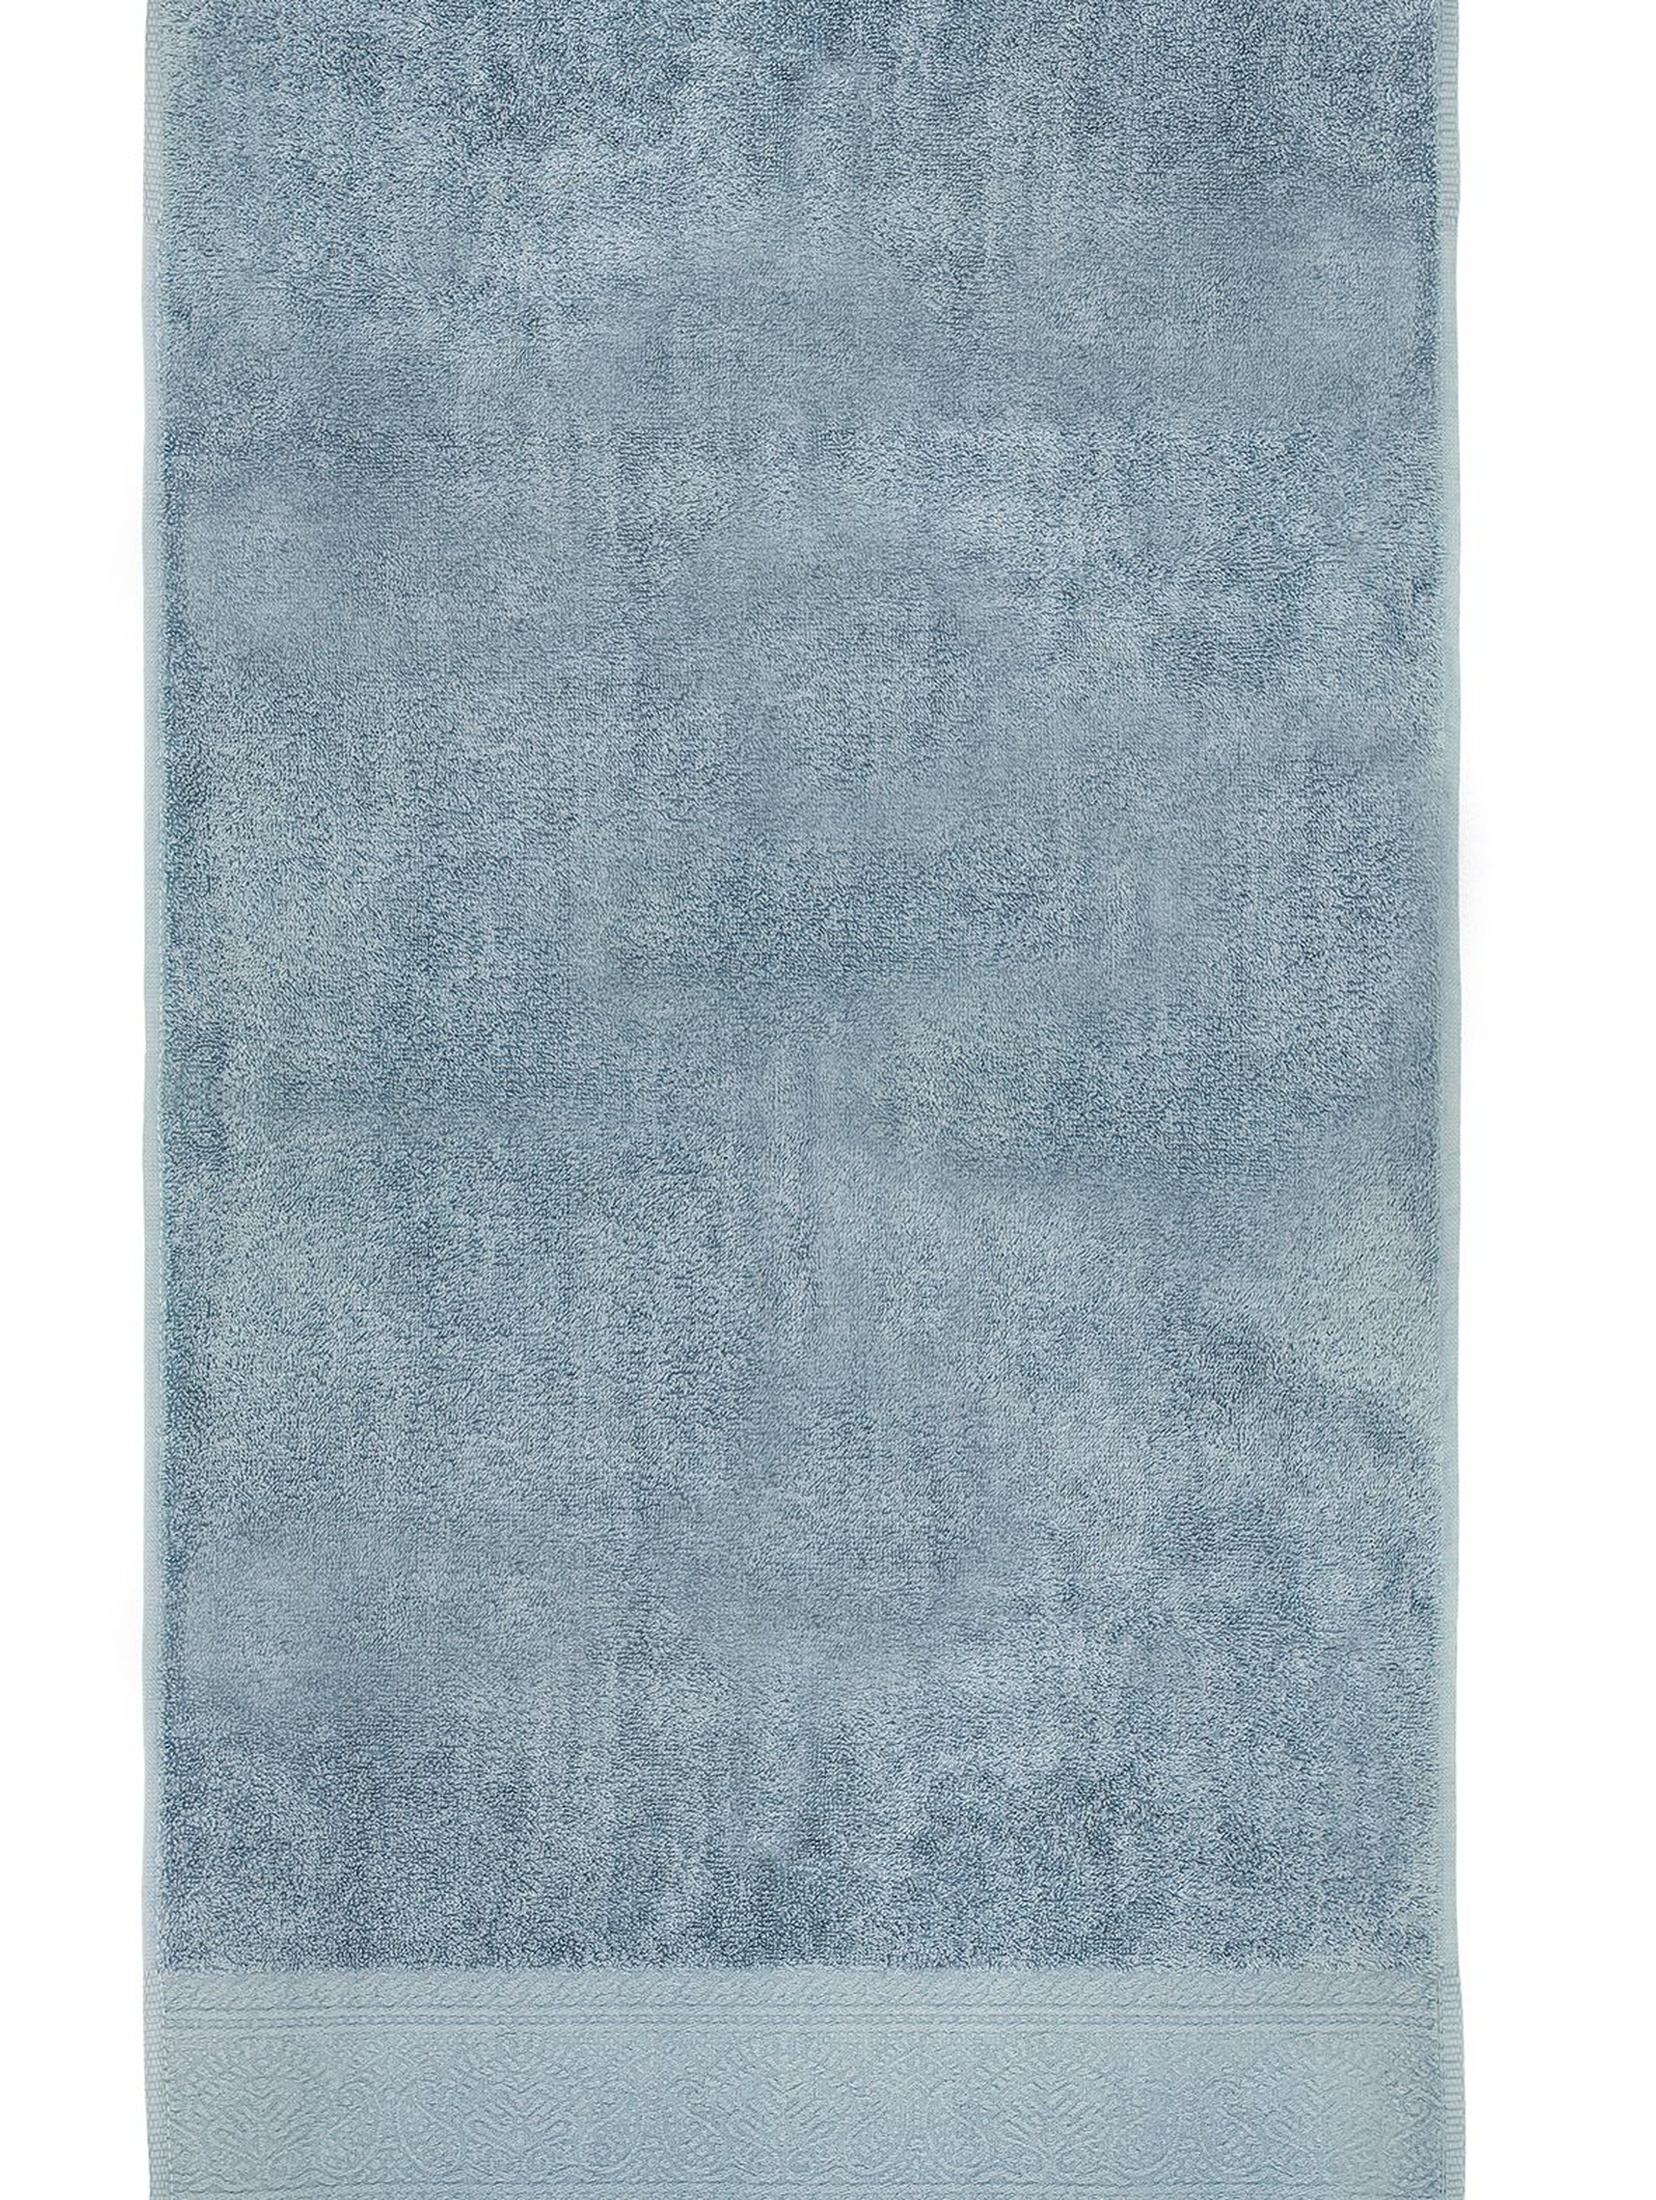 Bawełniany ręcznik MASSIMO niebieski 50x90cm